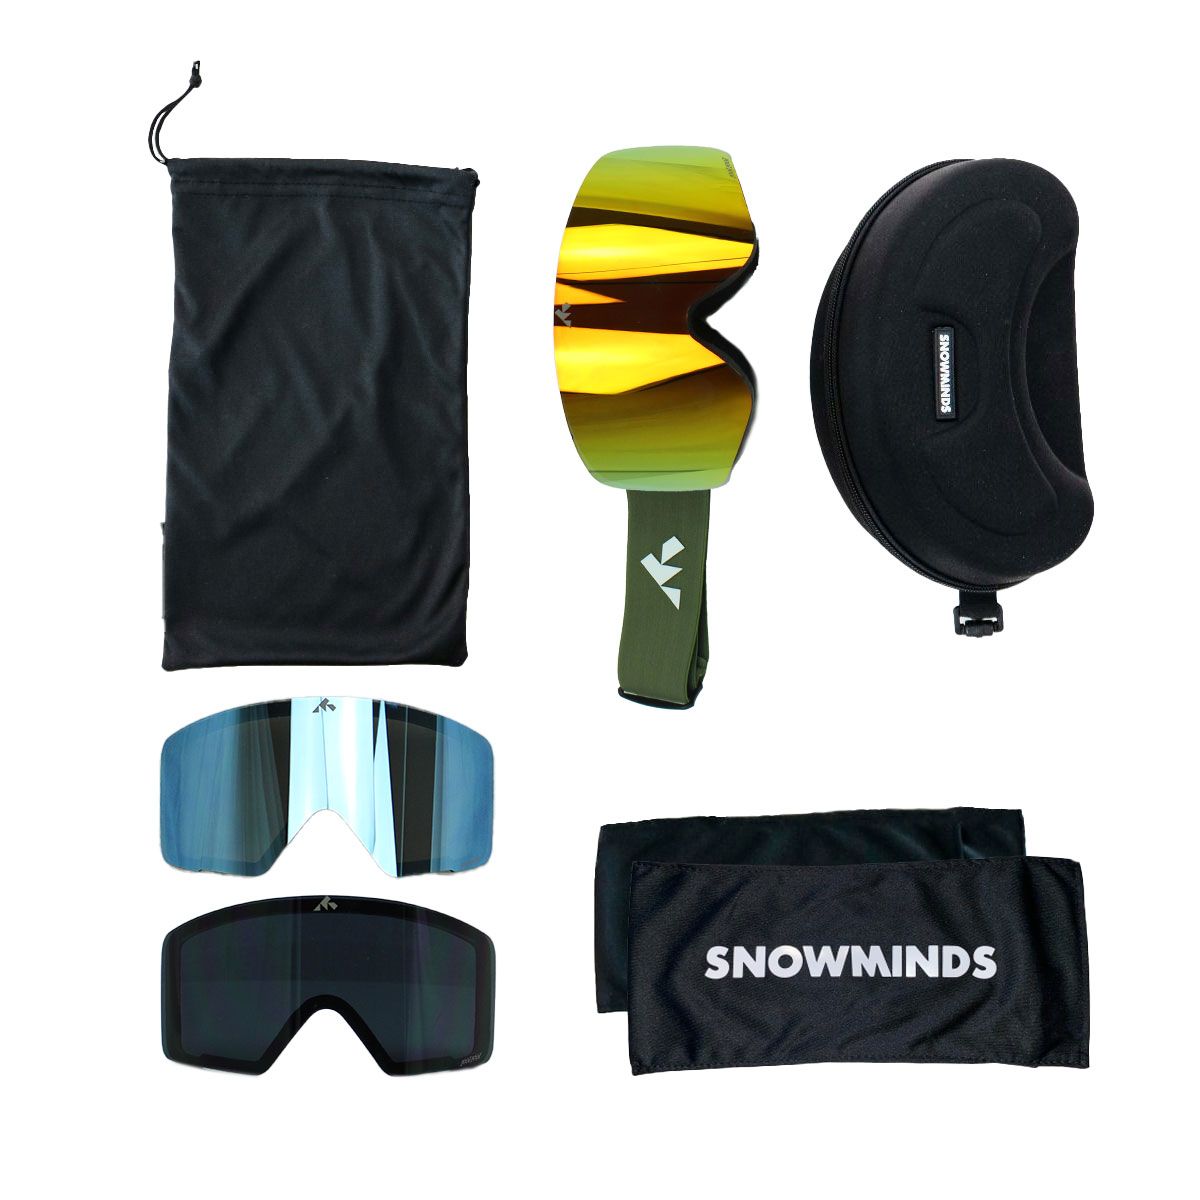 Billede af The Small Original Snowminds Goggle - All Inclusive, oliven grøn hos Skisport.dk